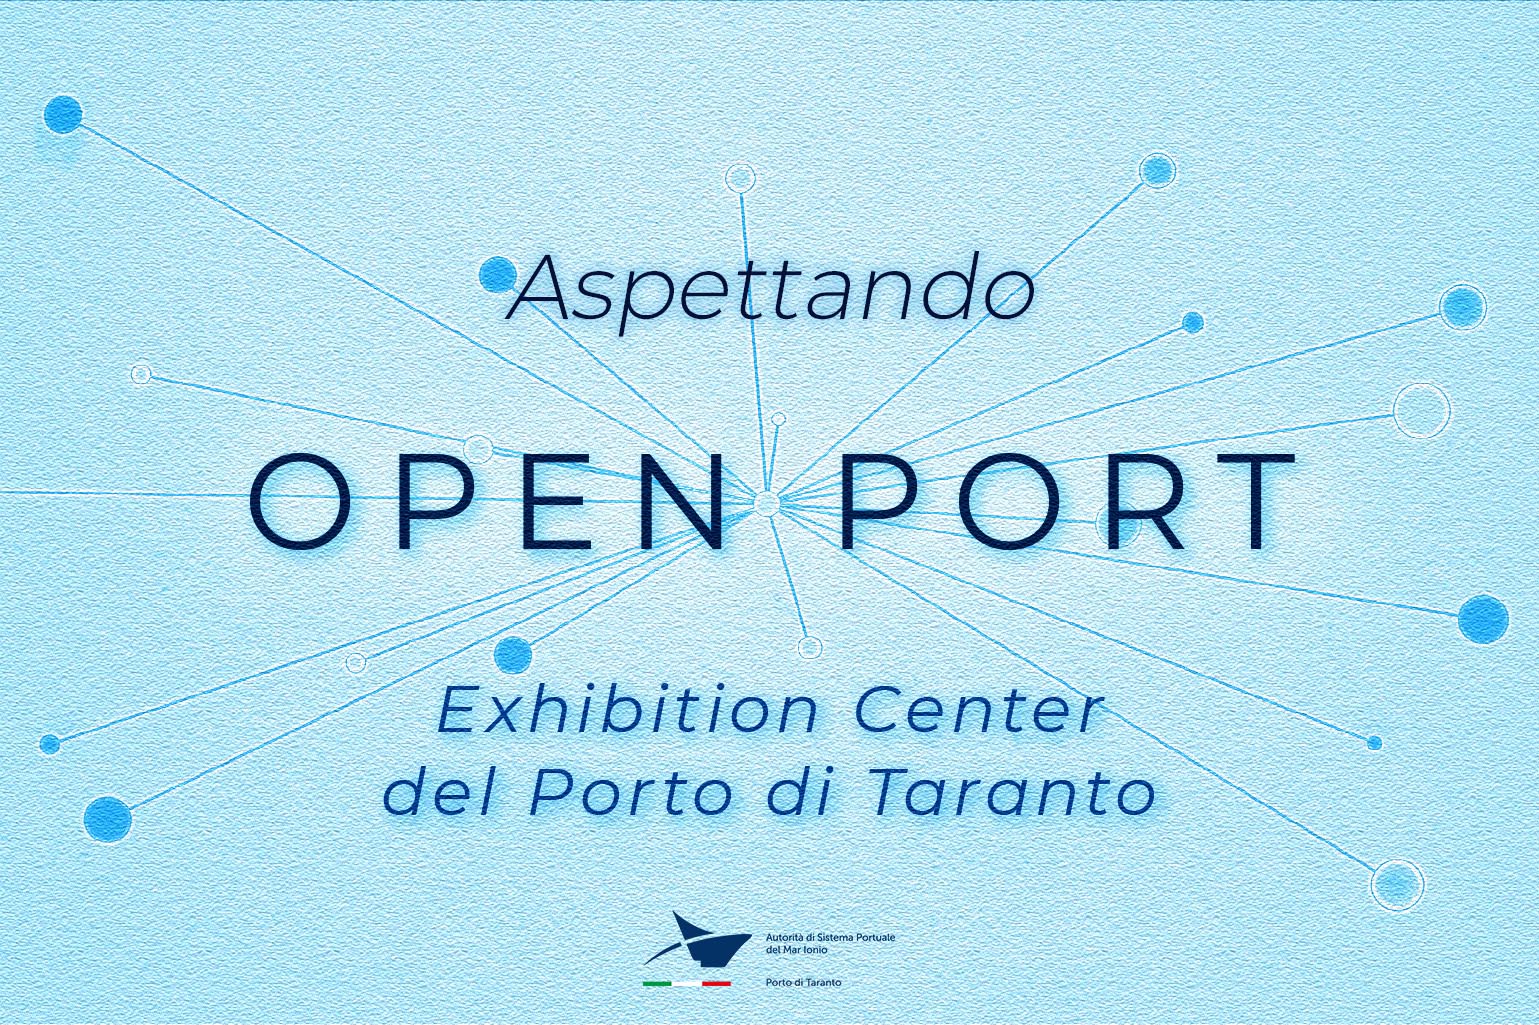 Open Port news